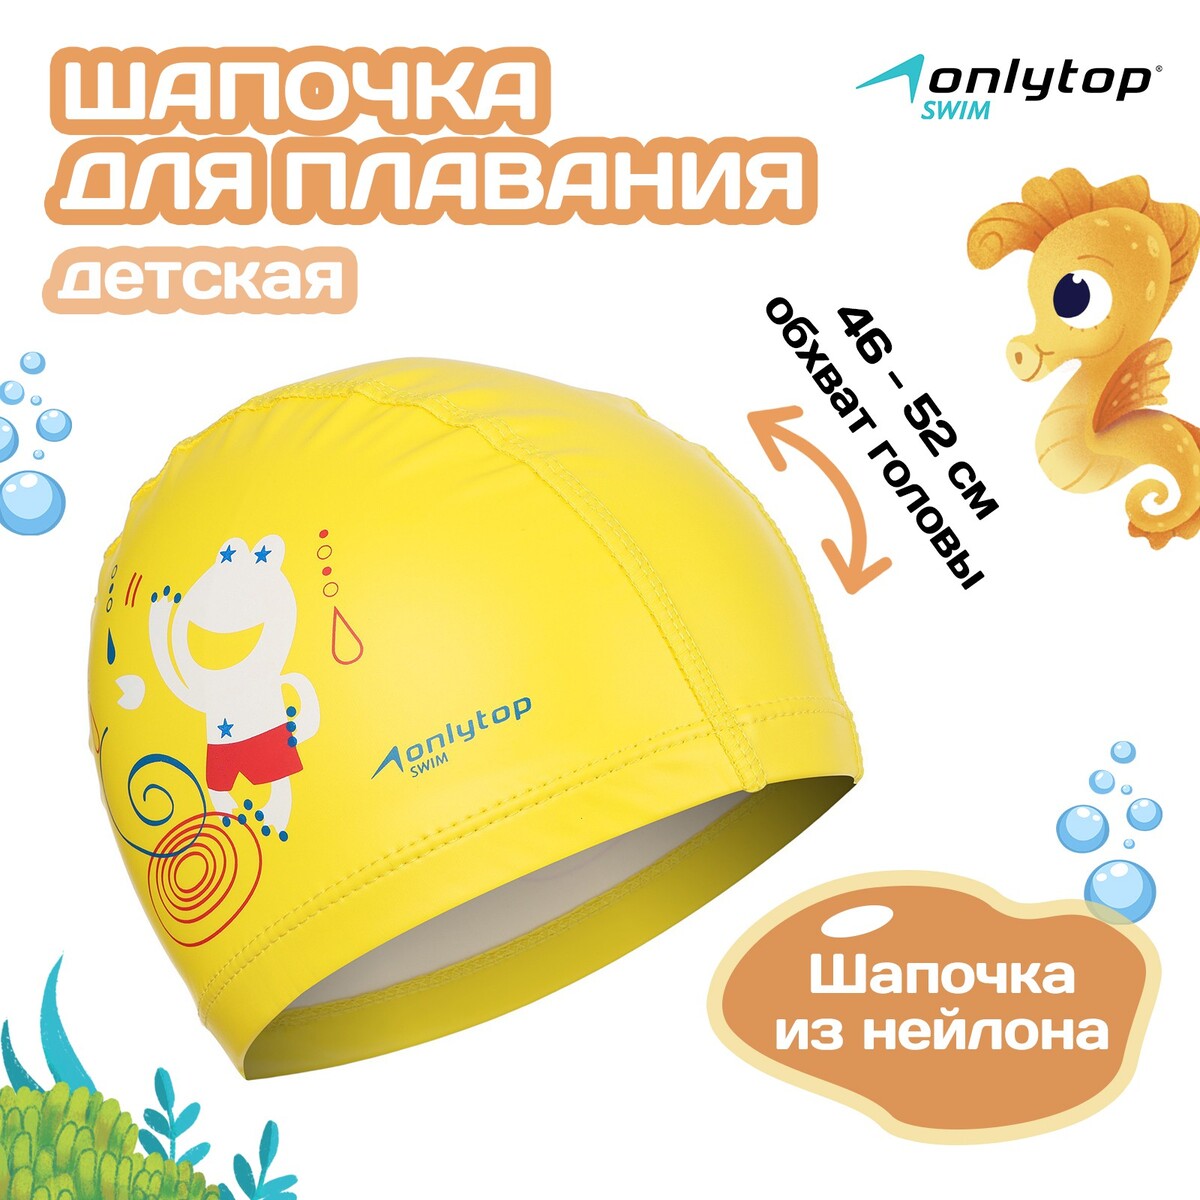 Шапочка для плавания детская onlytop, нейлон, обхват 46-52 см шапочка для плавания arena classic silicone jr 9167035 желтый